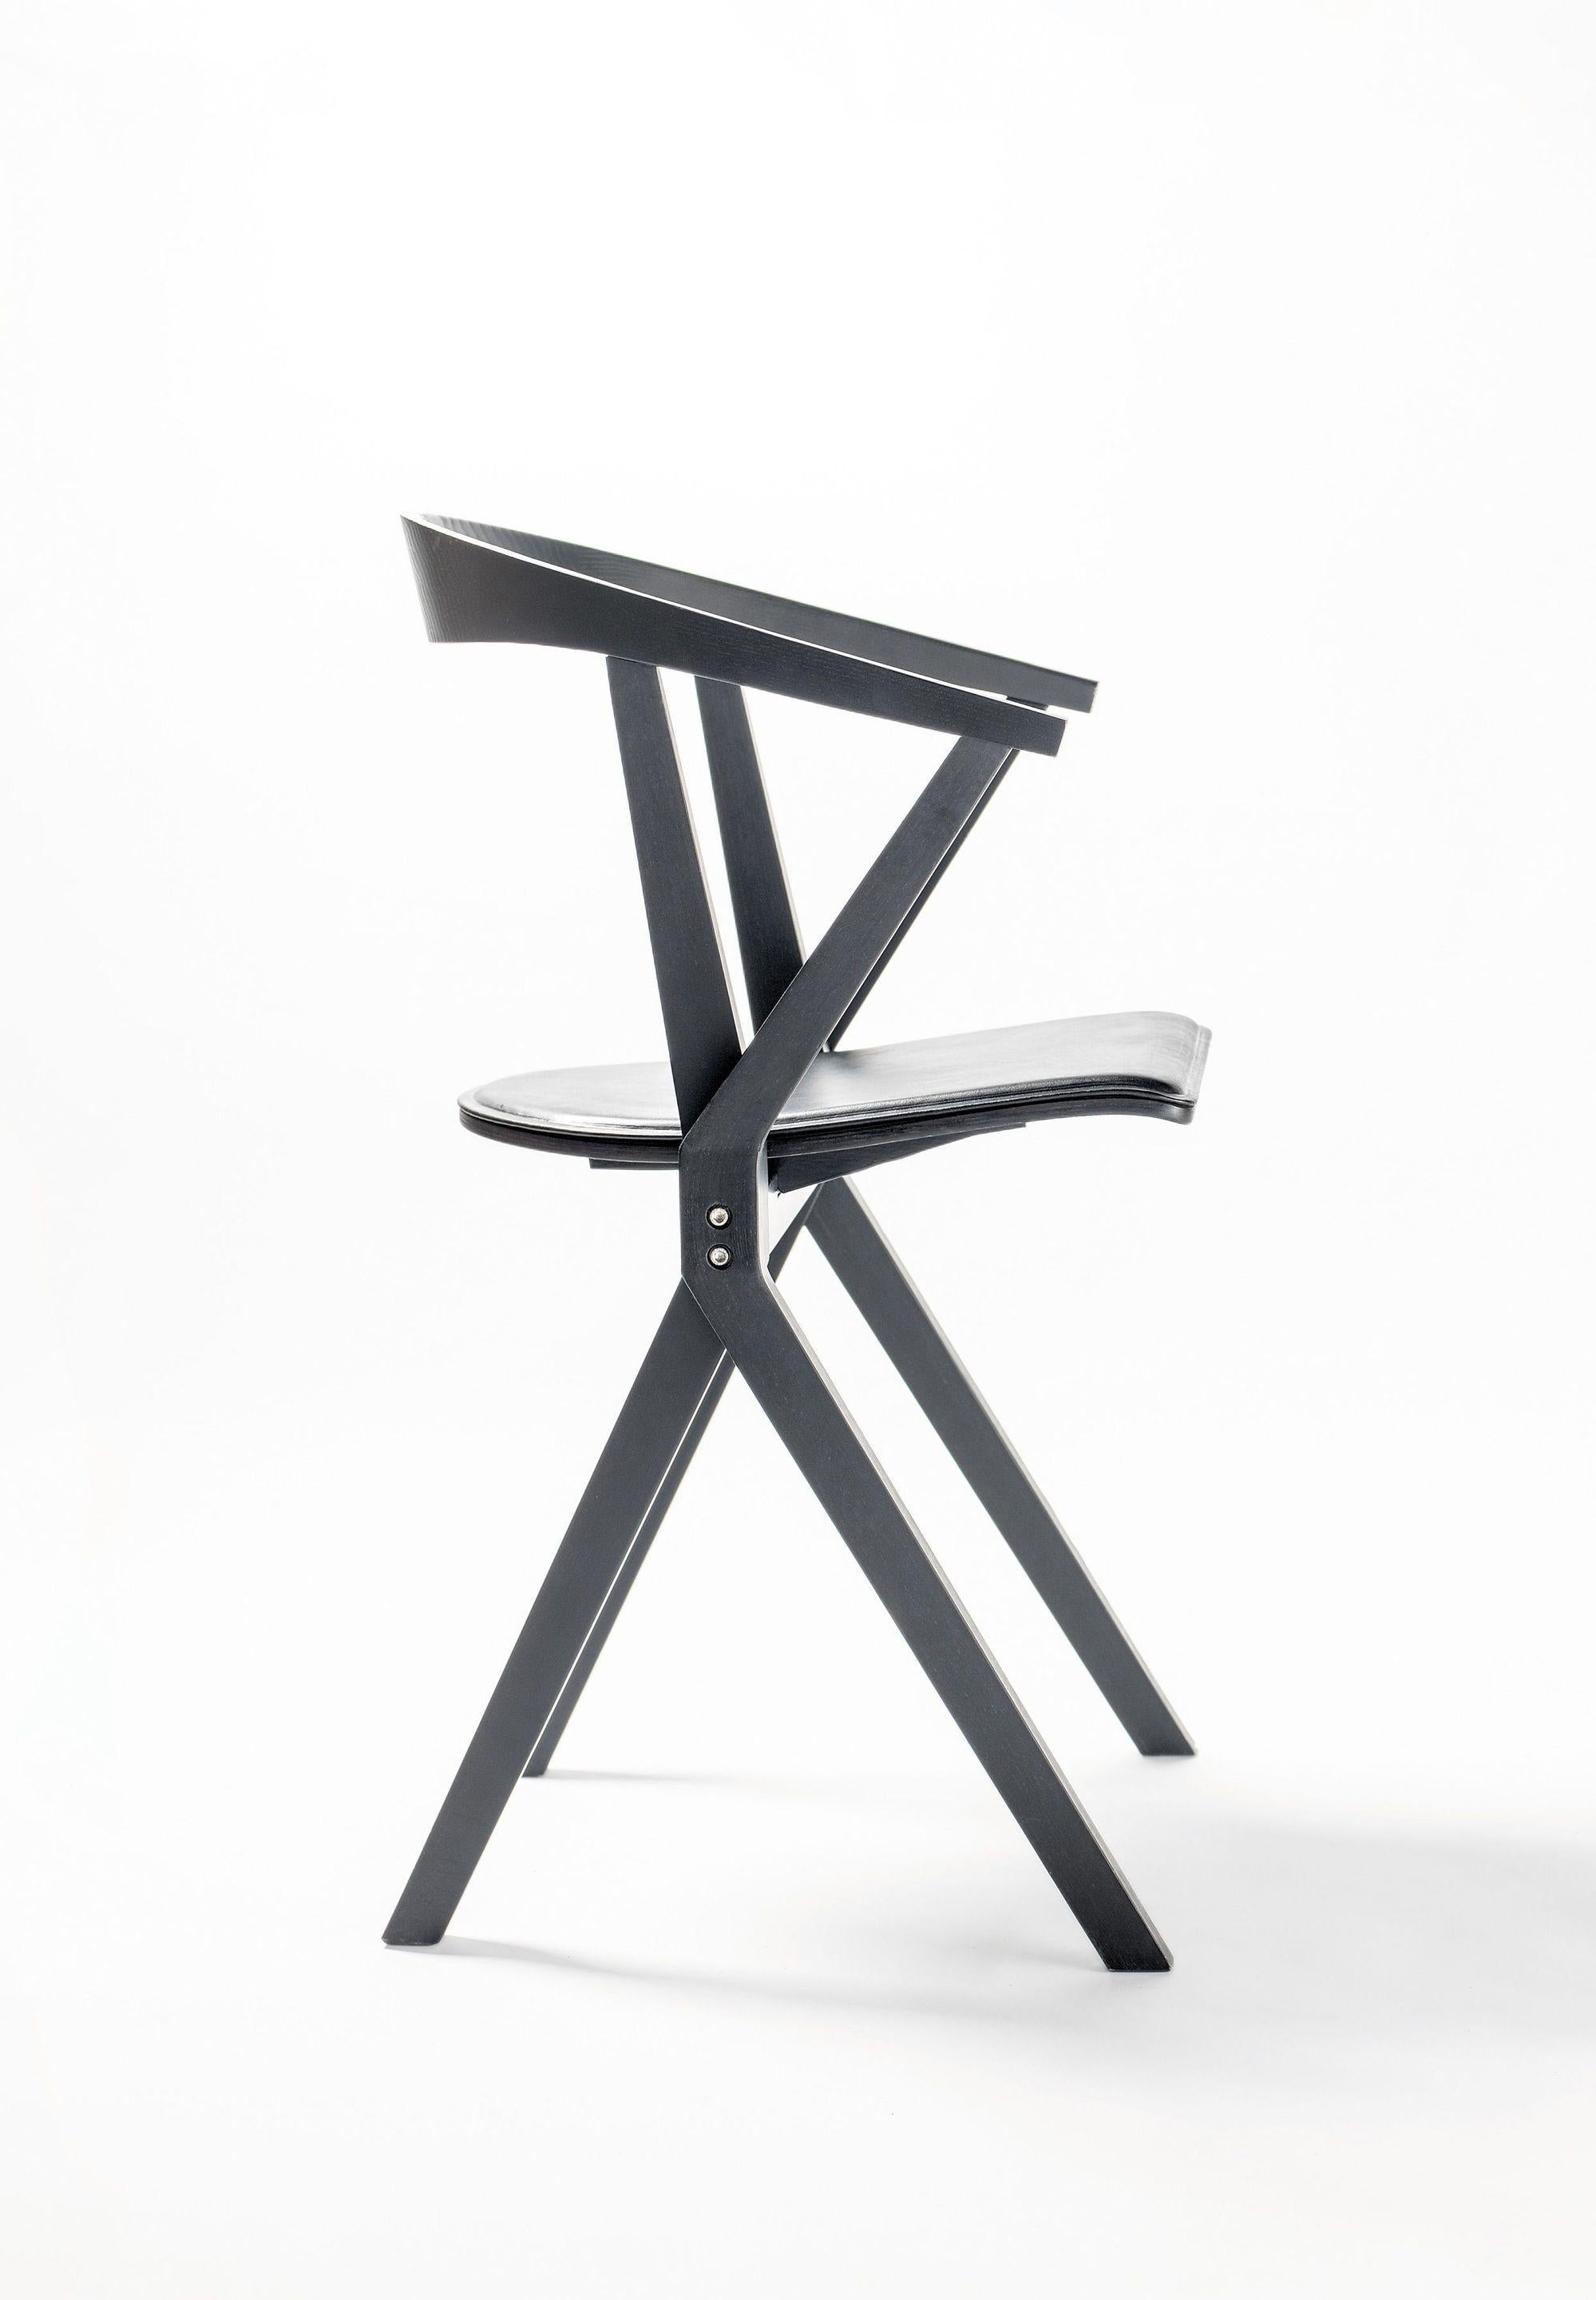 Chaise B frêne laqué noir de Konstantin Grcic
Dimensions : P 48 x L 56 x H 77 cm 
Matériaux : Les côtés latéraux et la partie supérieure de l'assise sont en contreplaqué de hêtre plaqué. La partie inférieure est plaquée en bois de frêne. Le